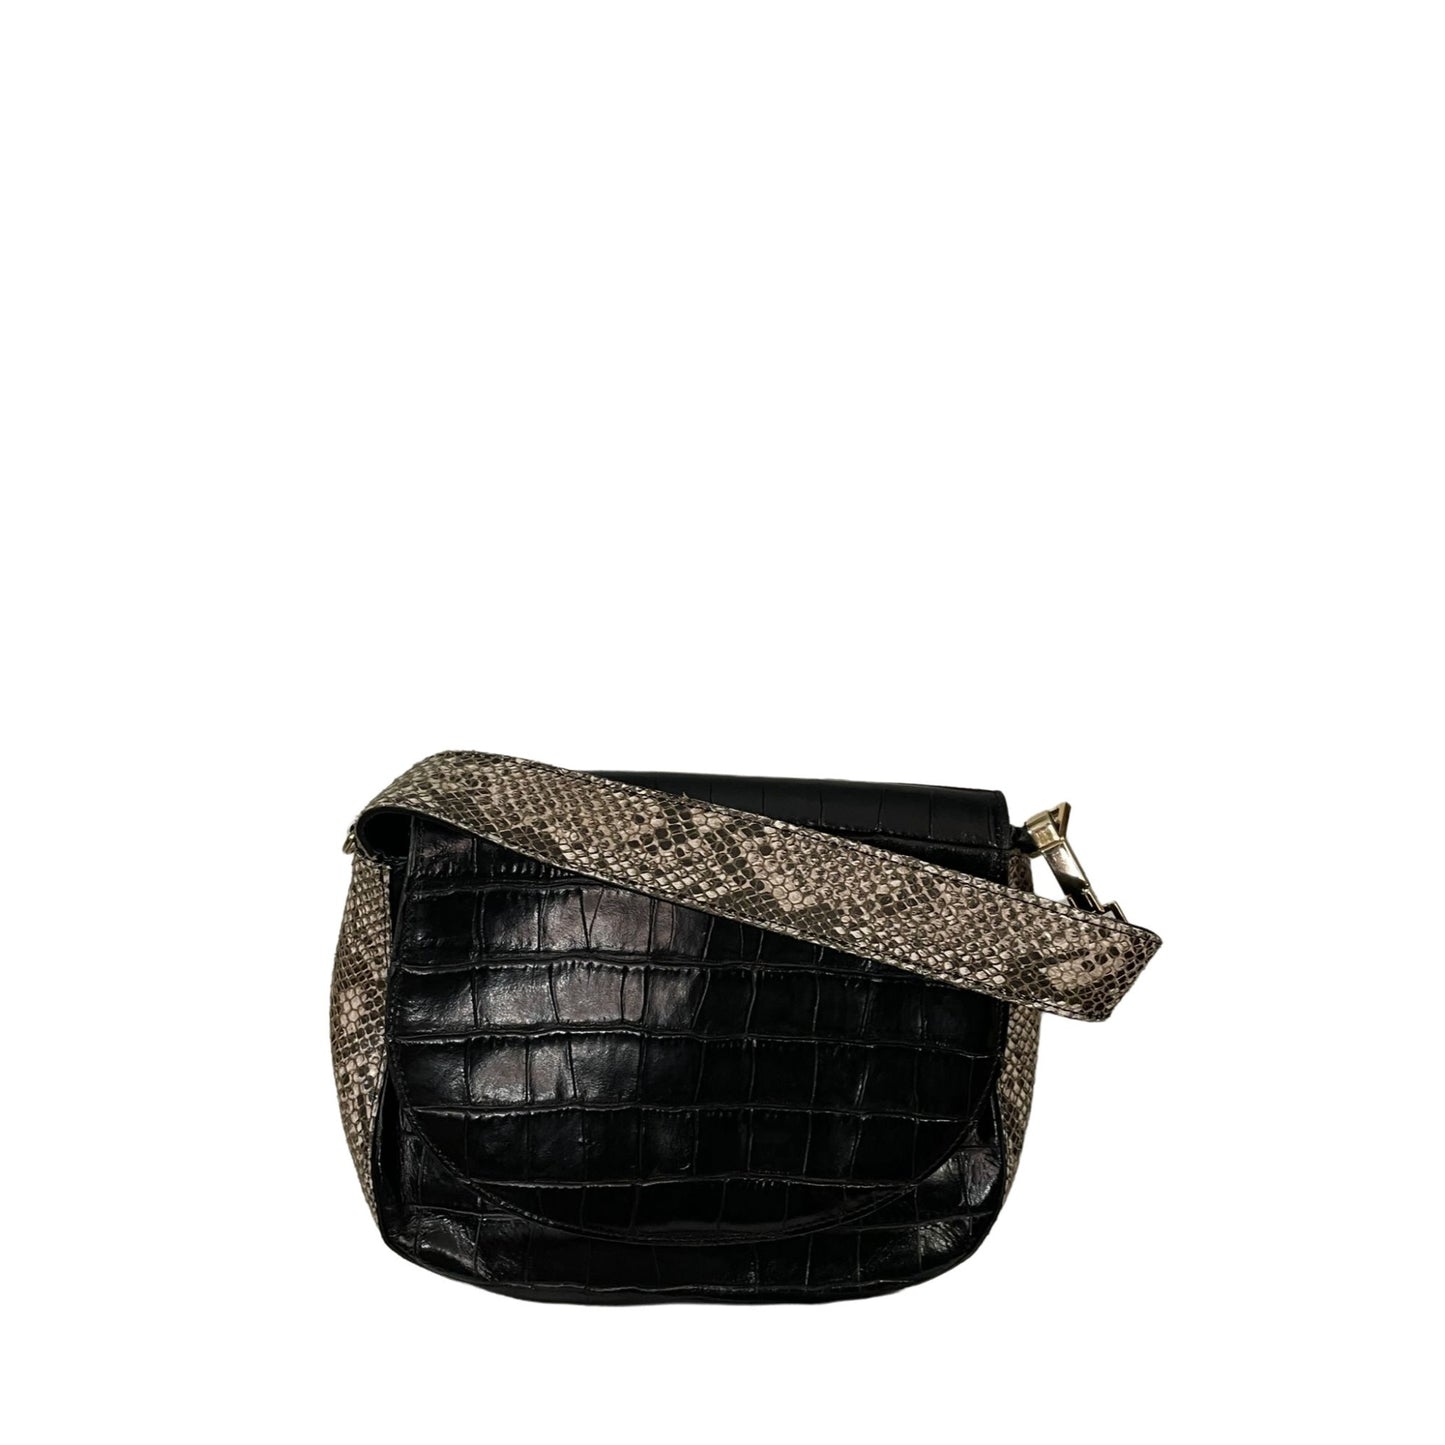 Black Leather Croc Snakeskin Trim Bag